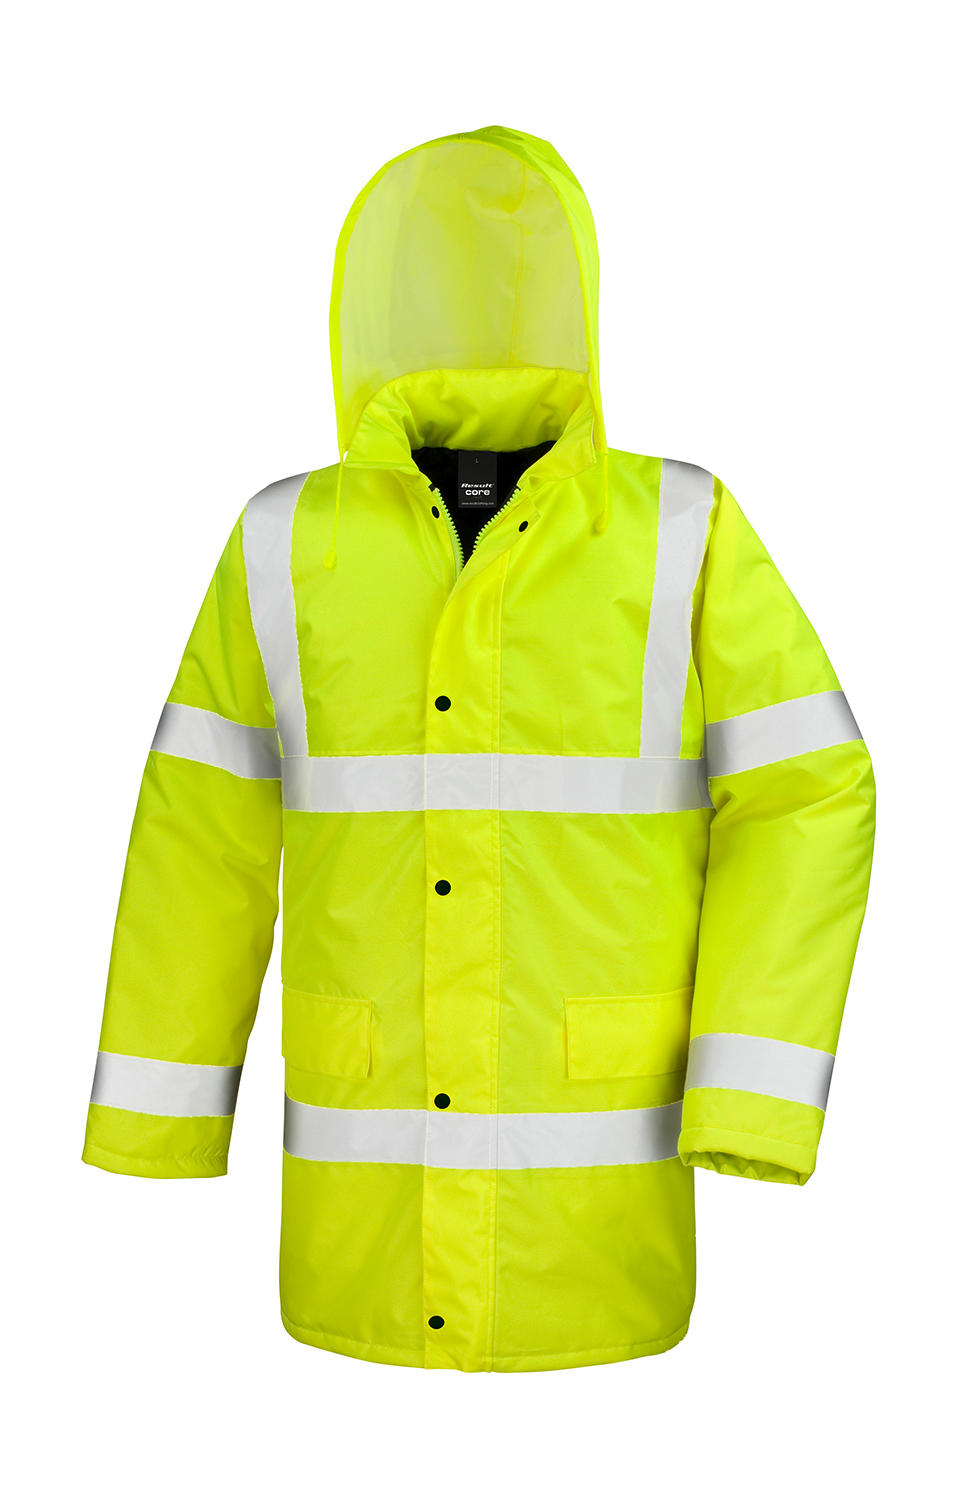  Core Hi-Vis Motorway Coat in Farbe Hi-viz Yellow